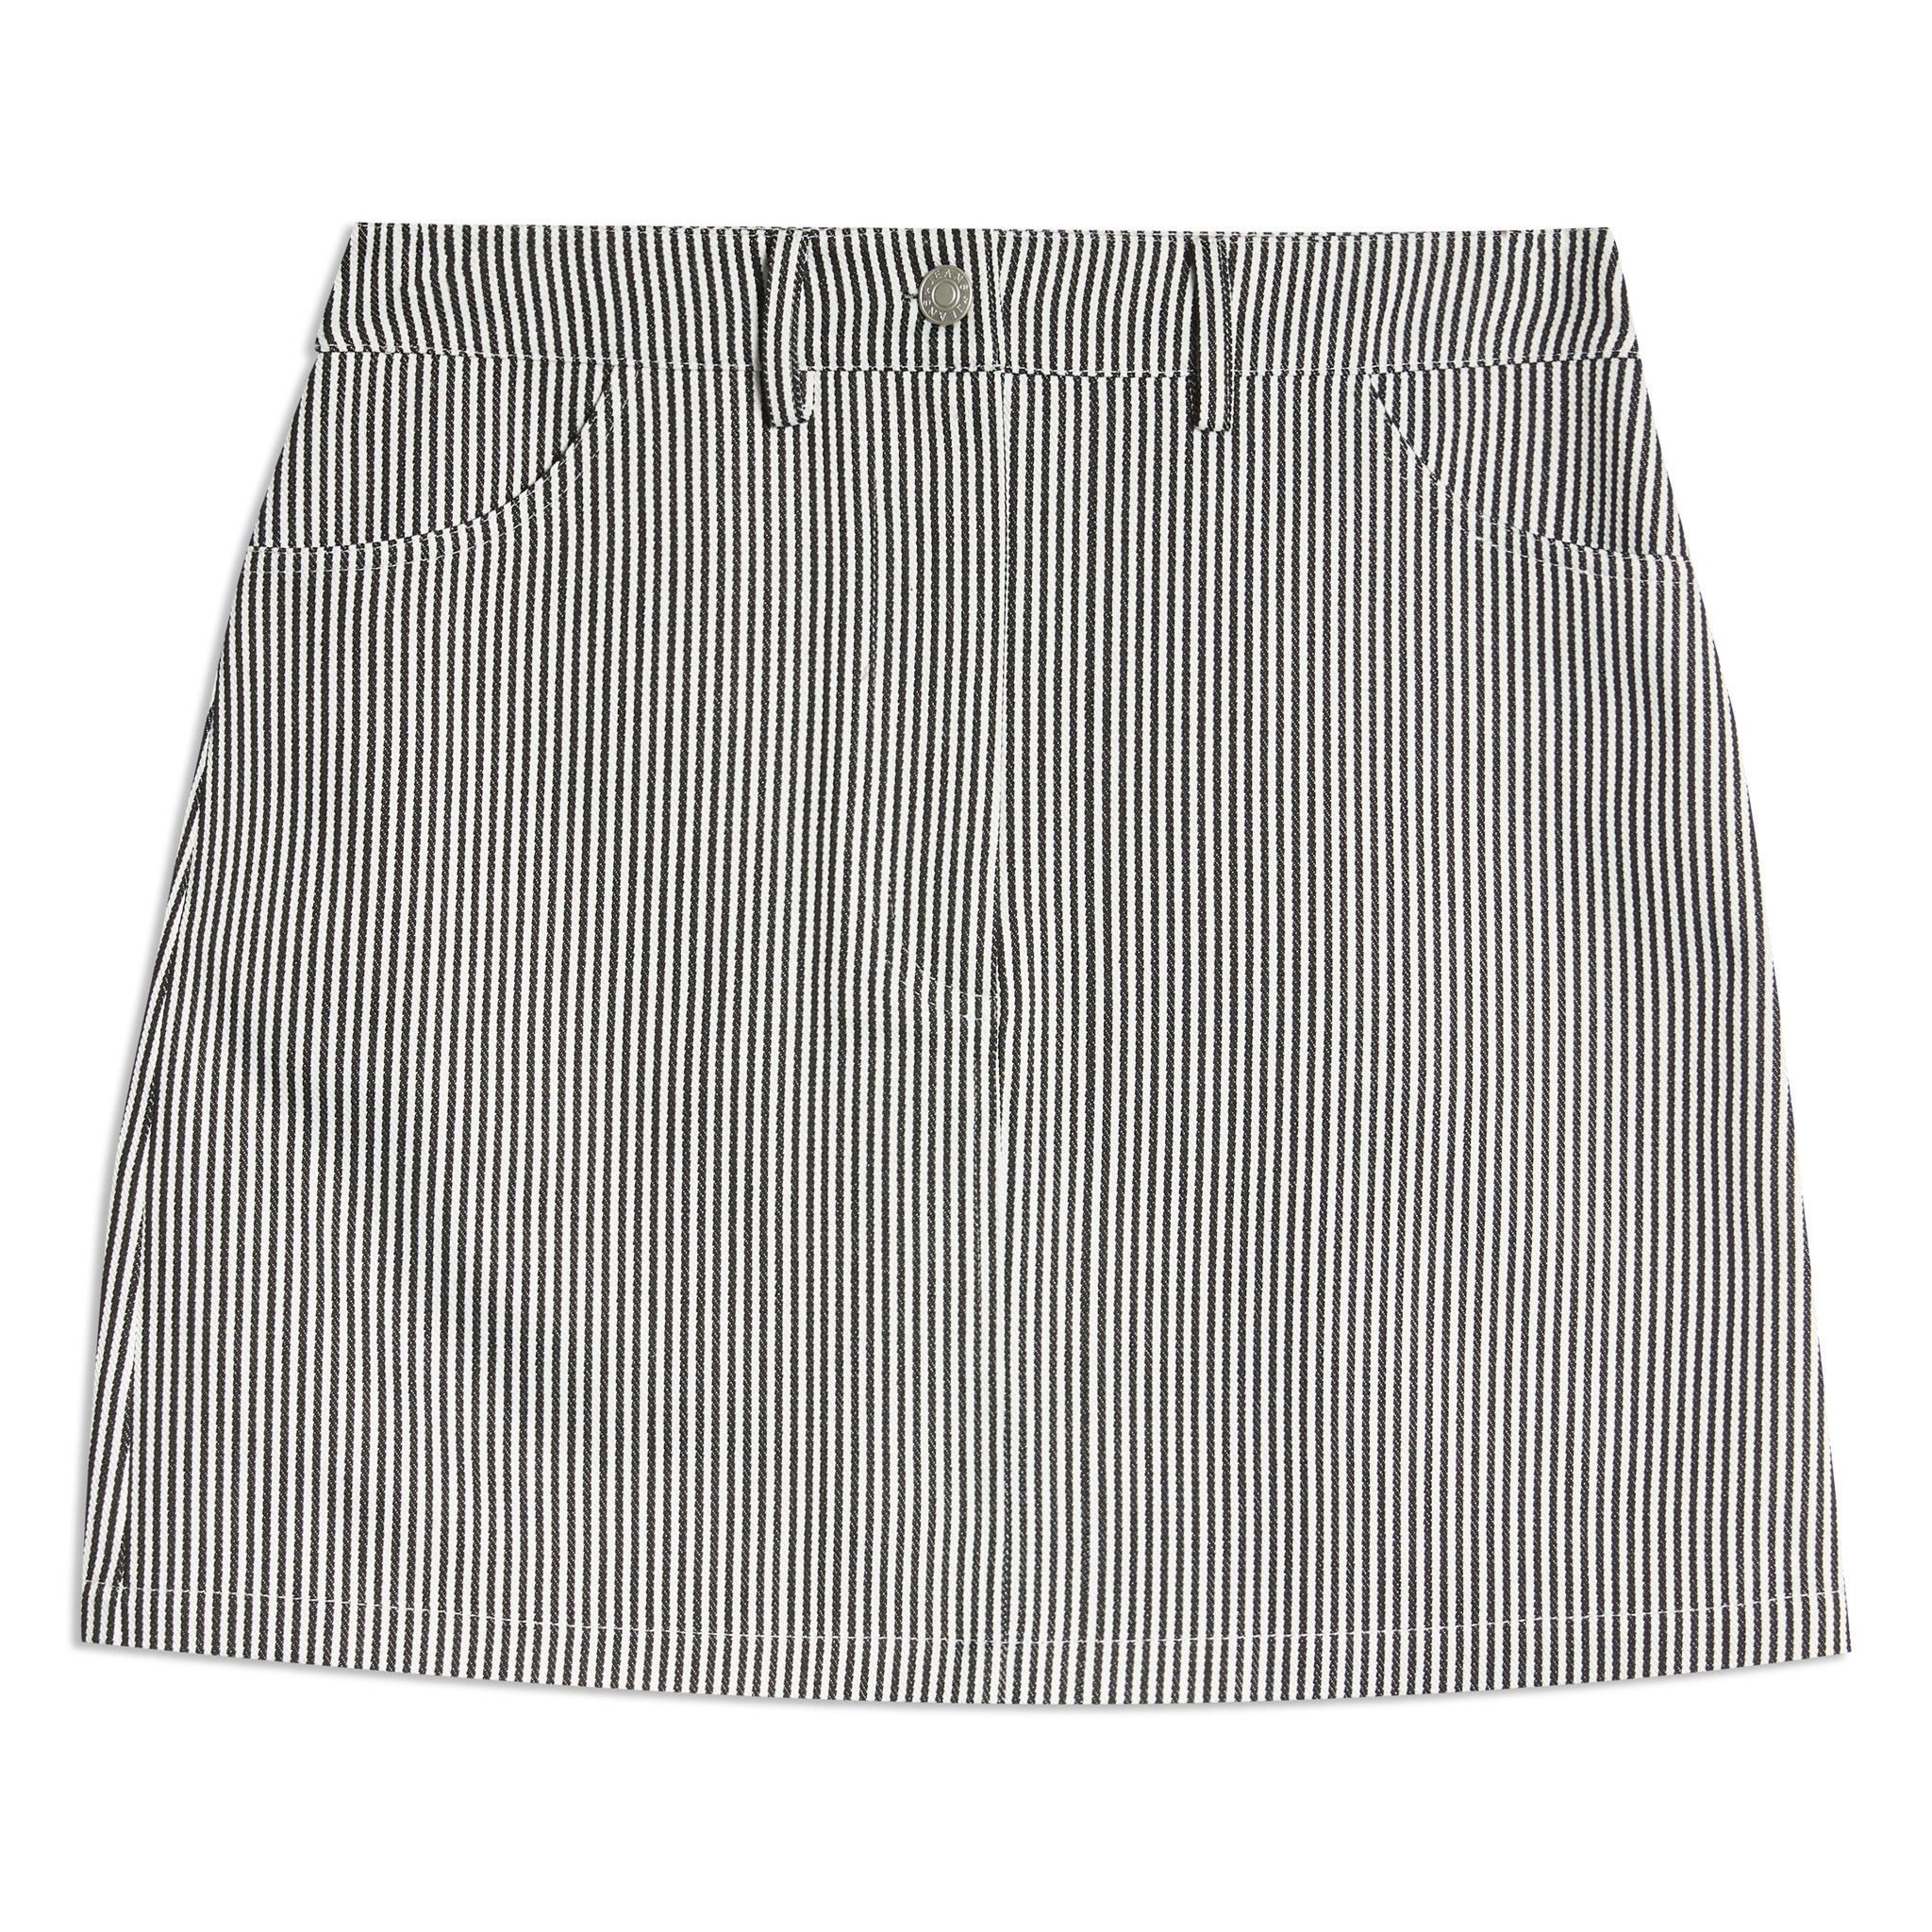 Ticking Stripe Short Skirt